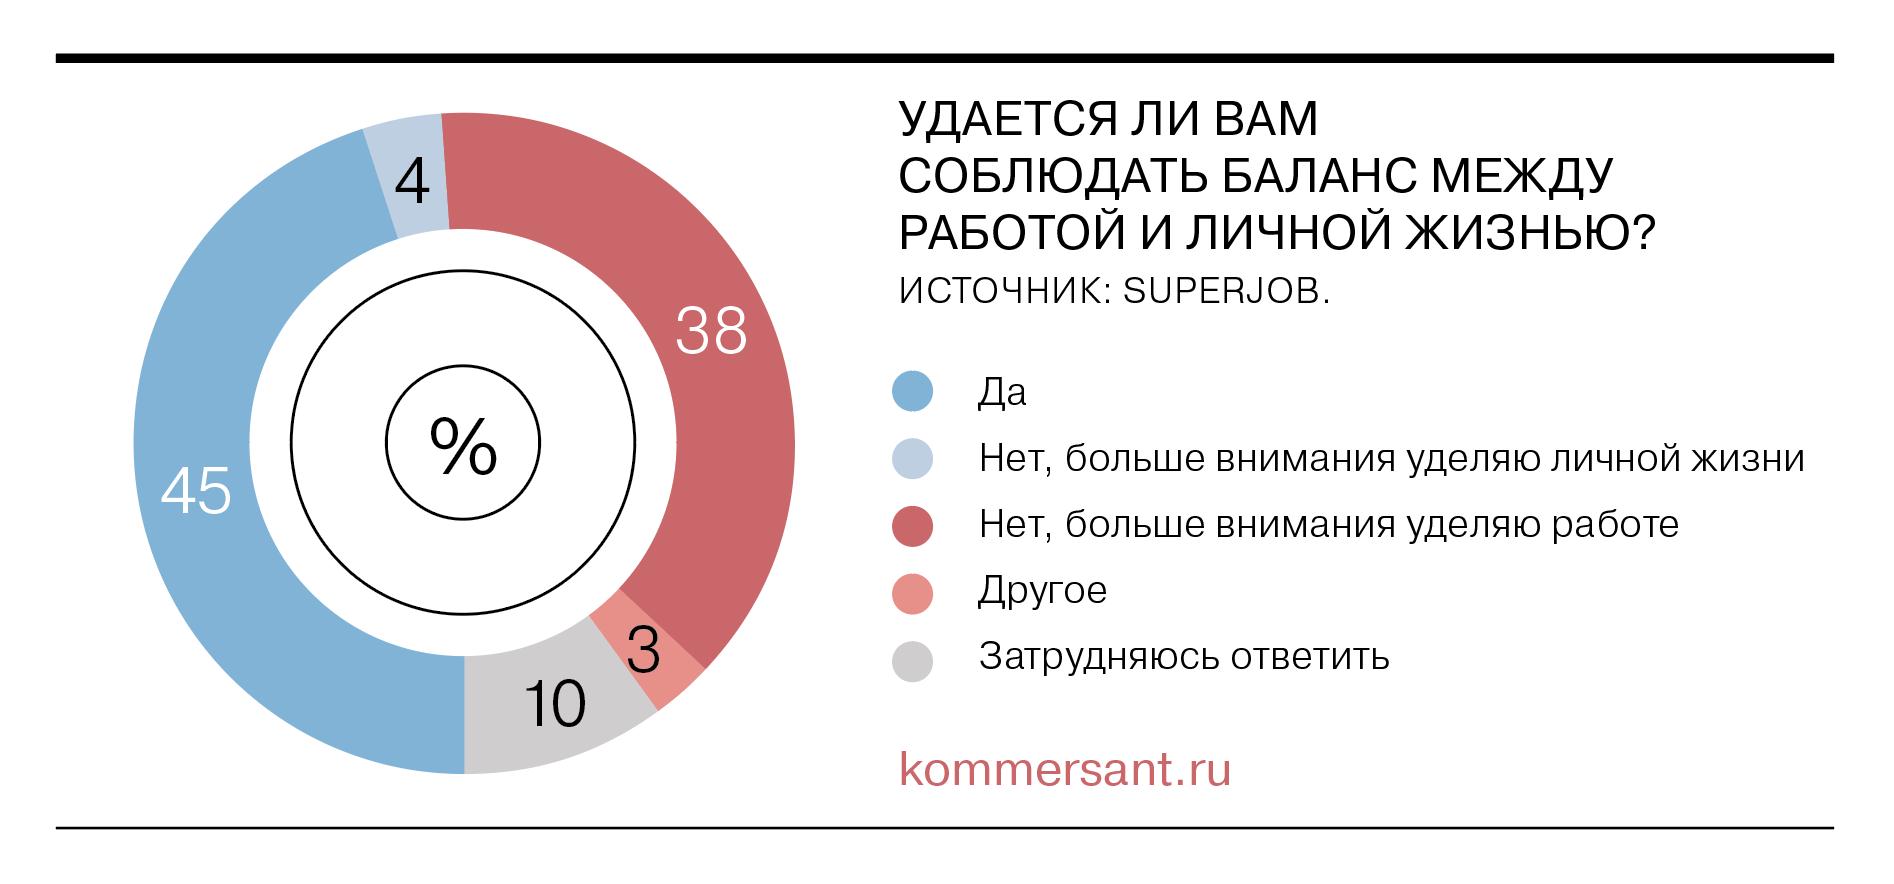 Сколько россиян соблюдают баланс между работой и личной жизнью